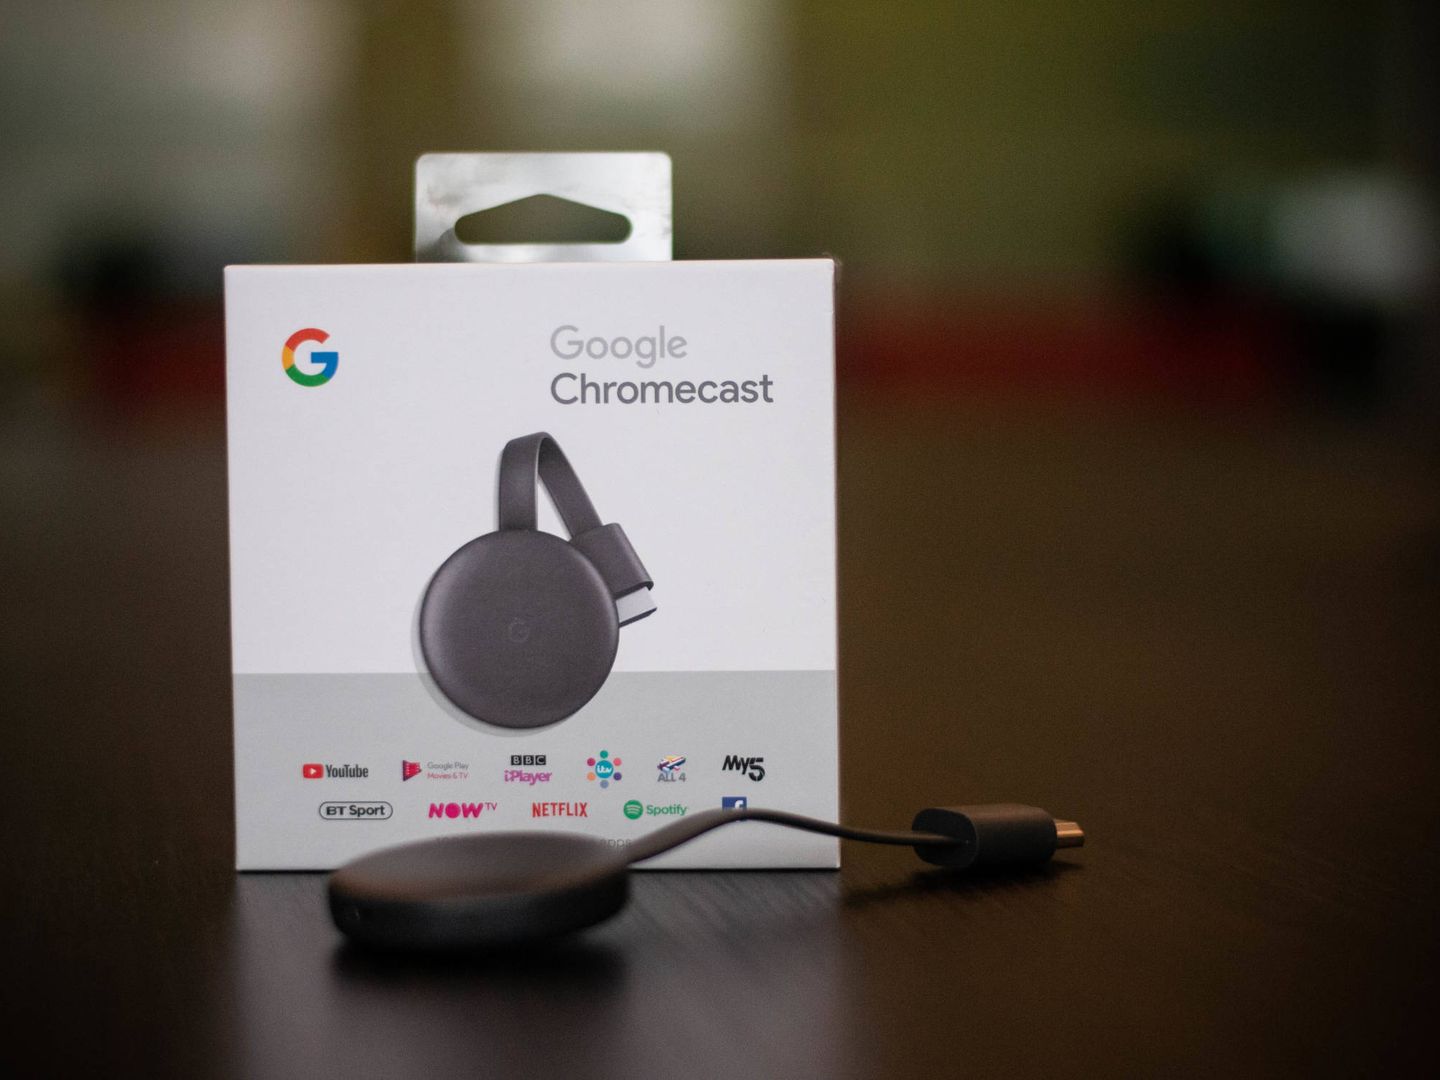 He probado el nuevo Chromecast y Google por fin consigue que vuelva a verle  utilidad